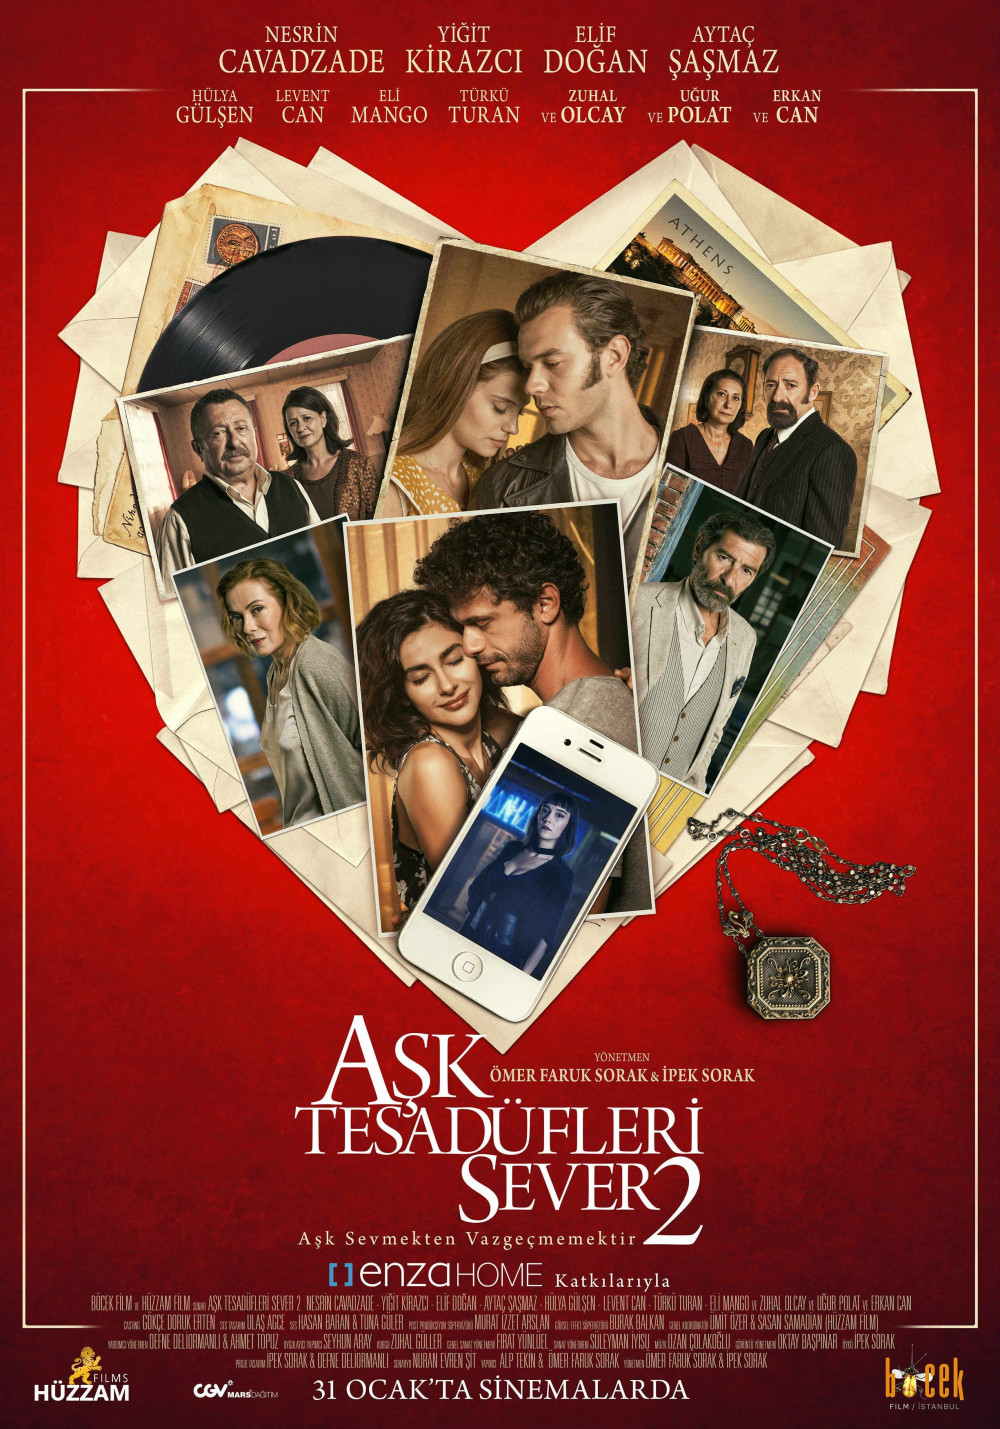 Nesrin Cavadzade yine çok seksi: Aşk Tesadüfleri Sever 2 filminin afişi - Resim: 3